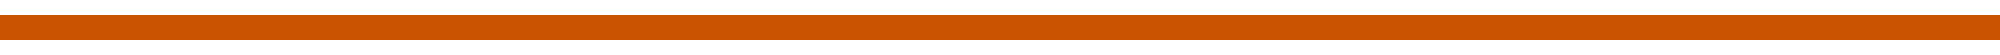 orangebar